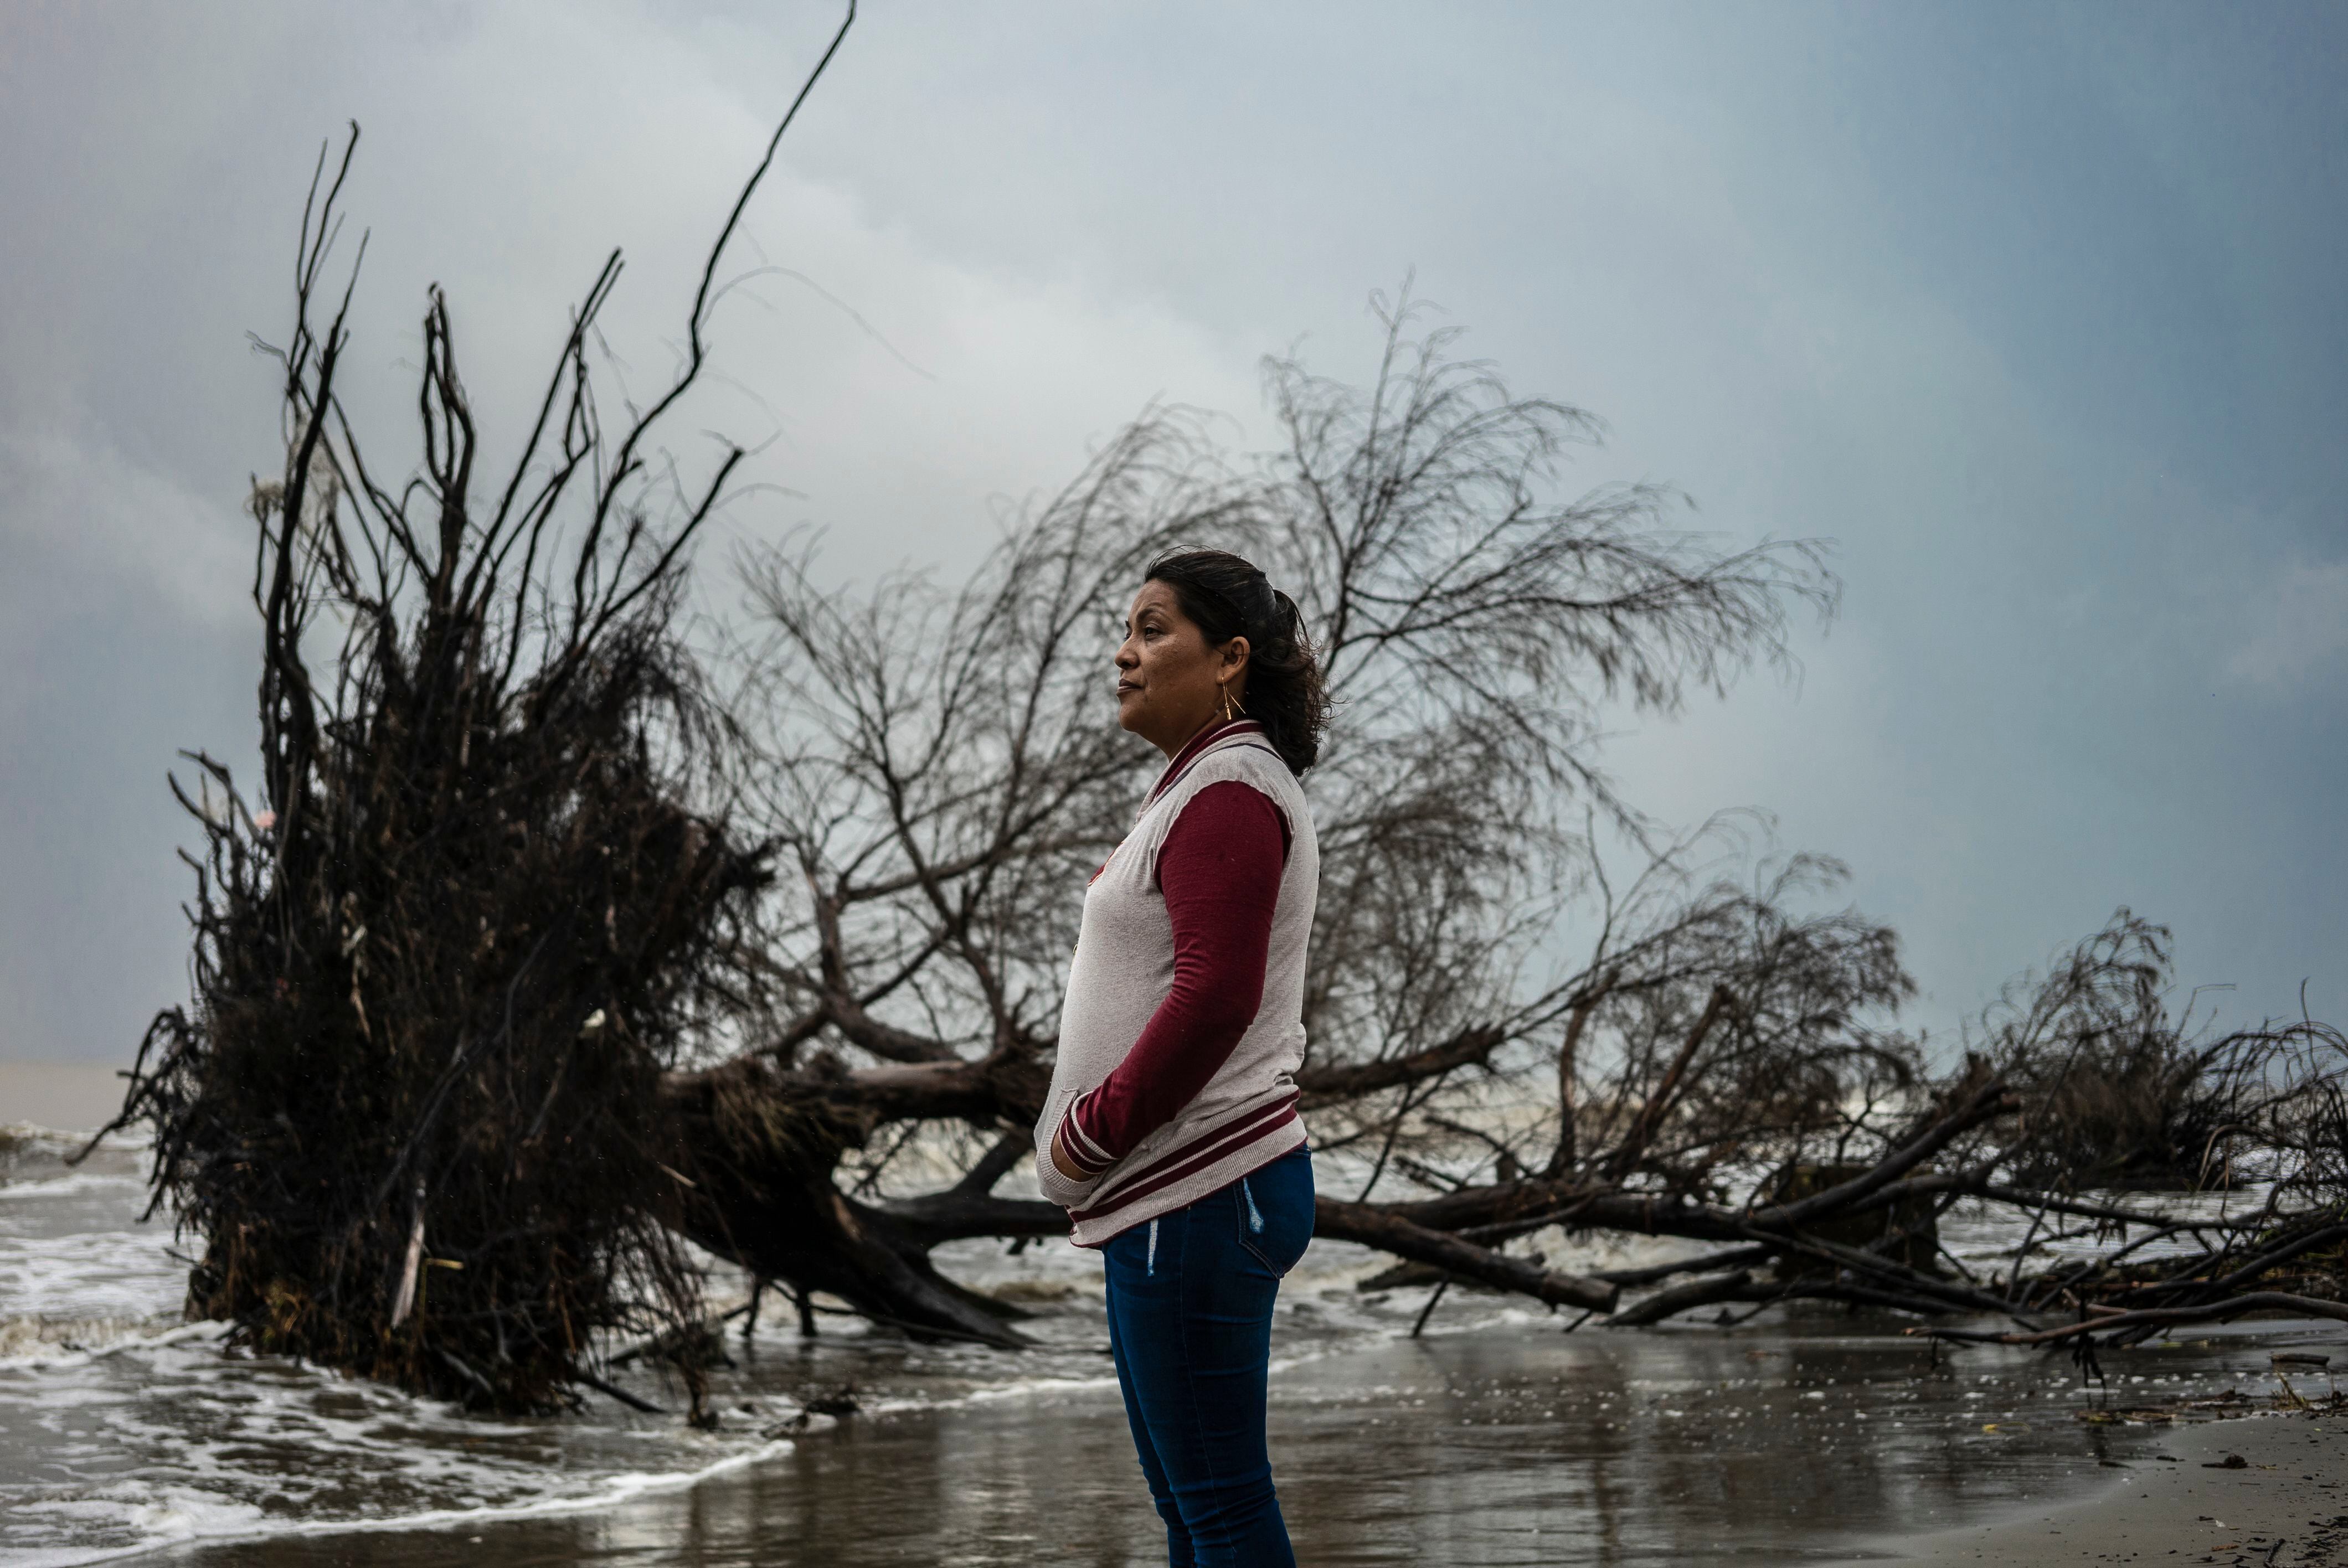 Cristina Pacheco observa un árbol que desaparece en la olas. 